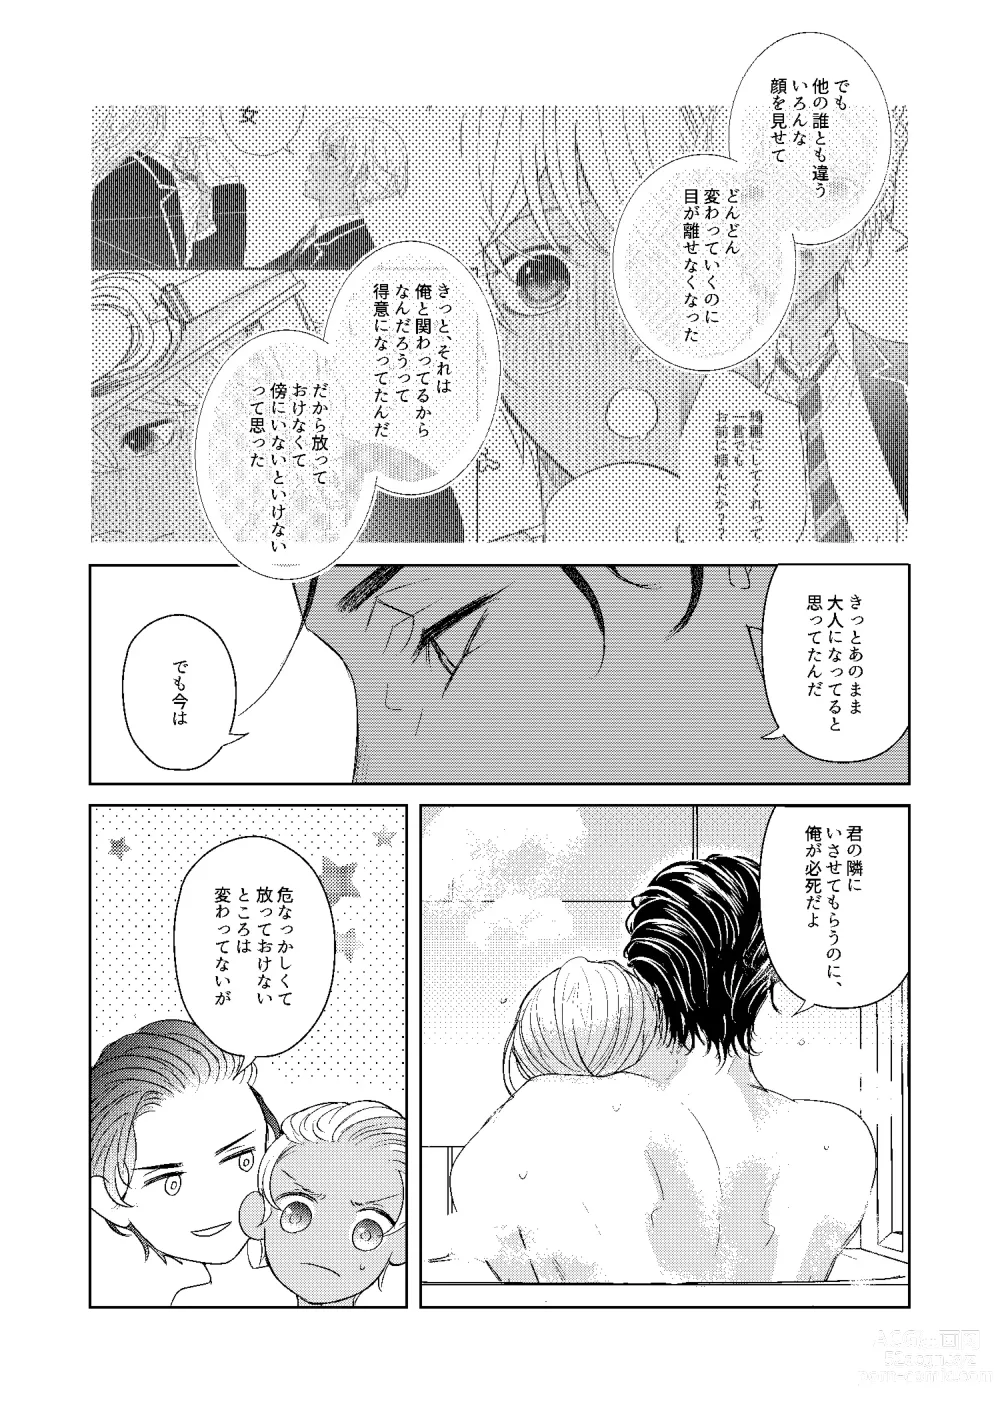 Page 102 of doujinshi Hatsukoi 2006